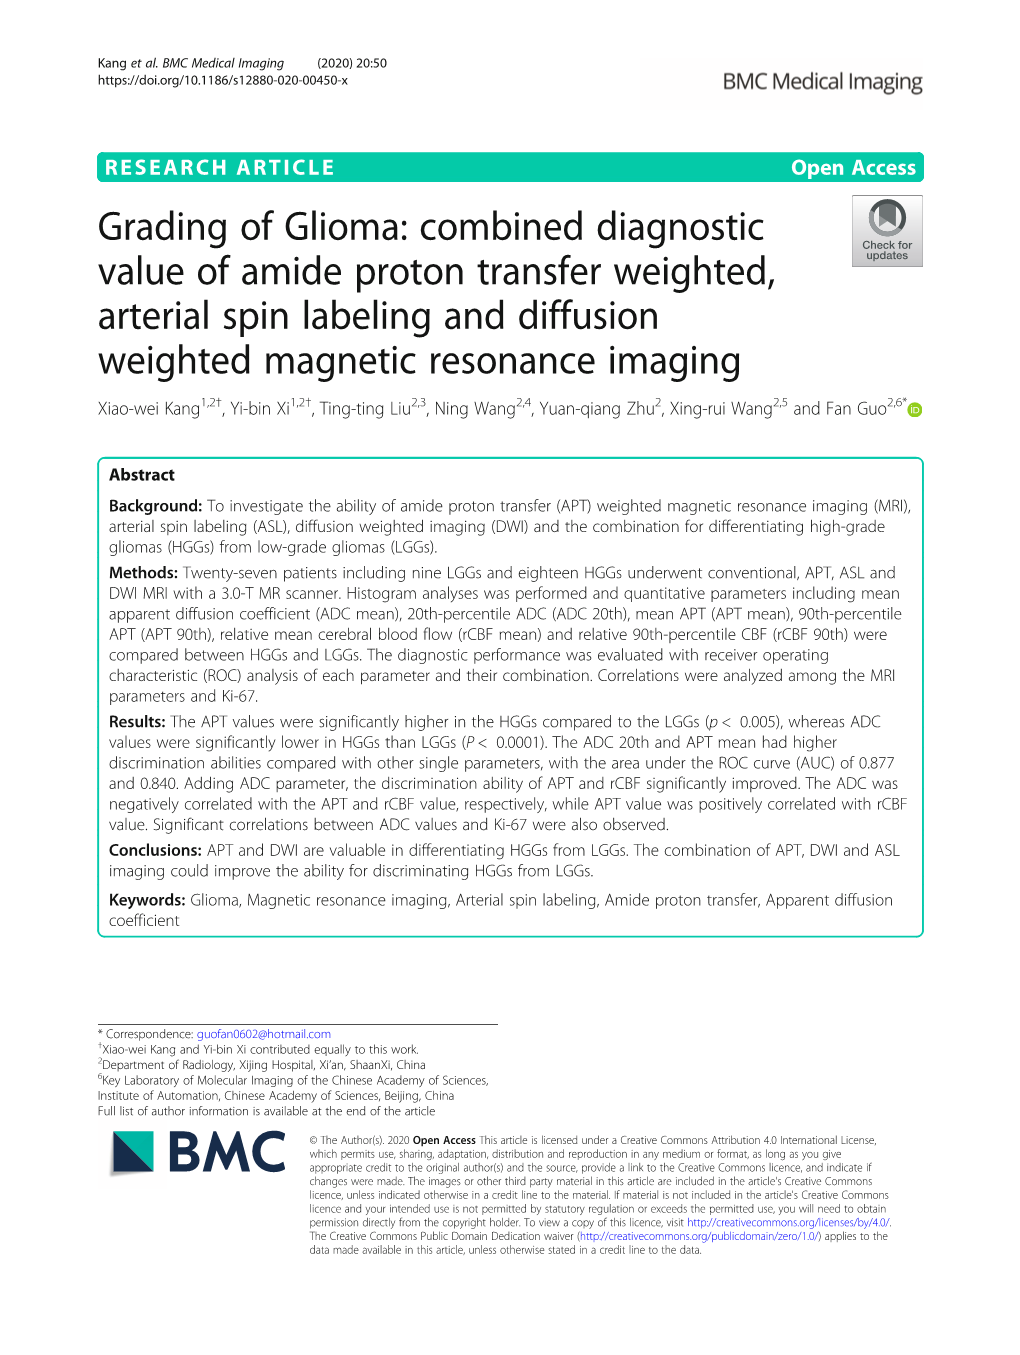 Grading of Glioma: Combined Diagnostic Value of Amide Proton